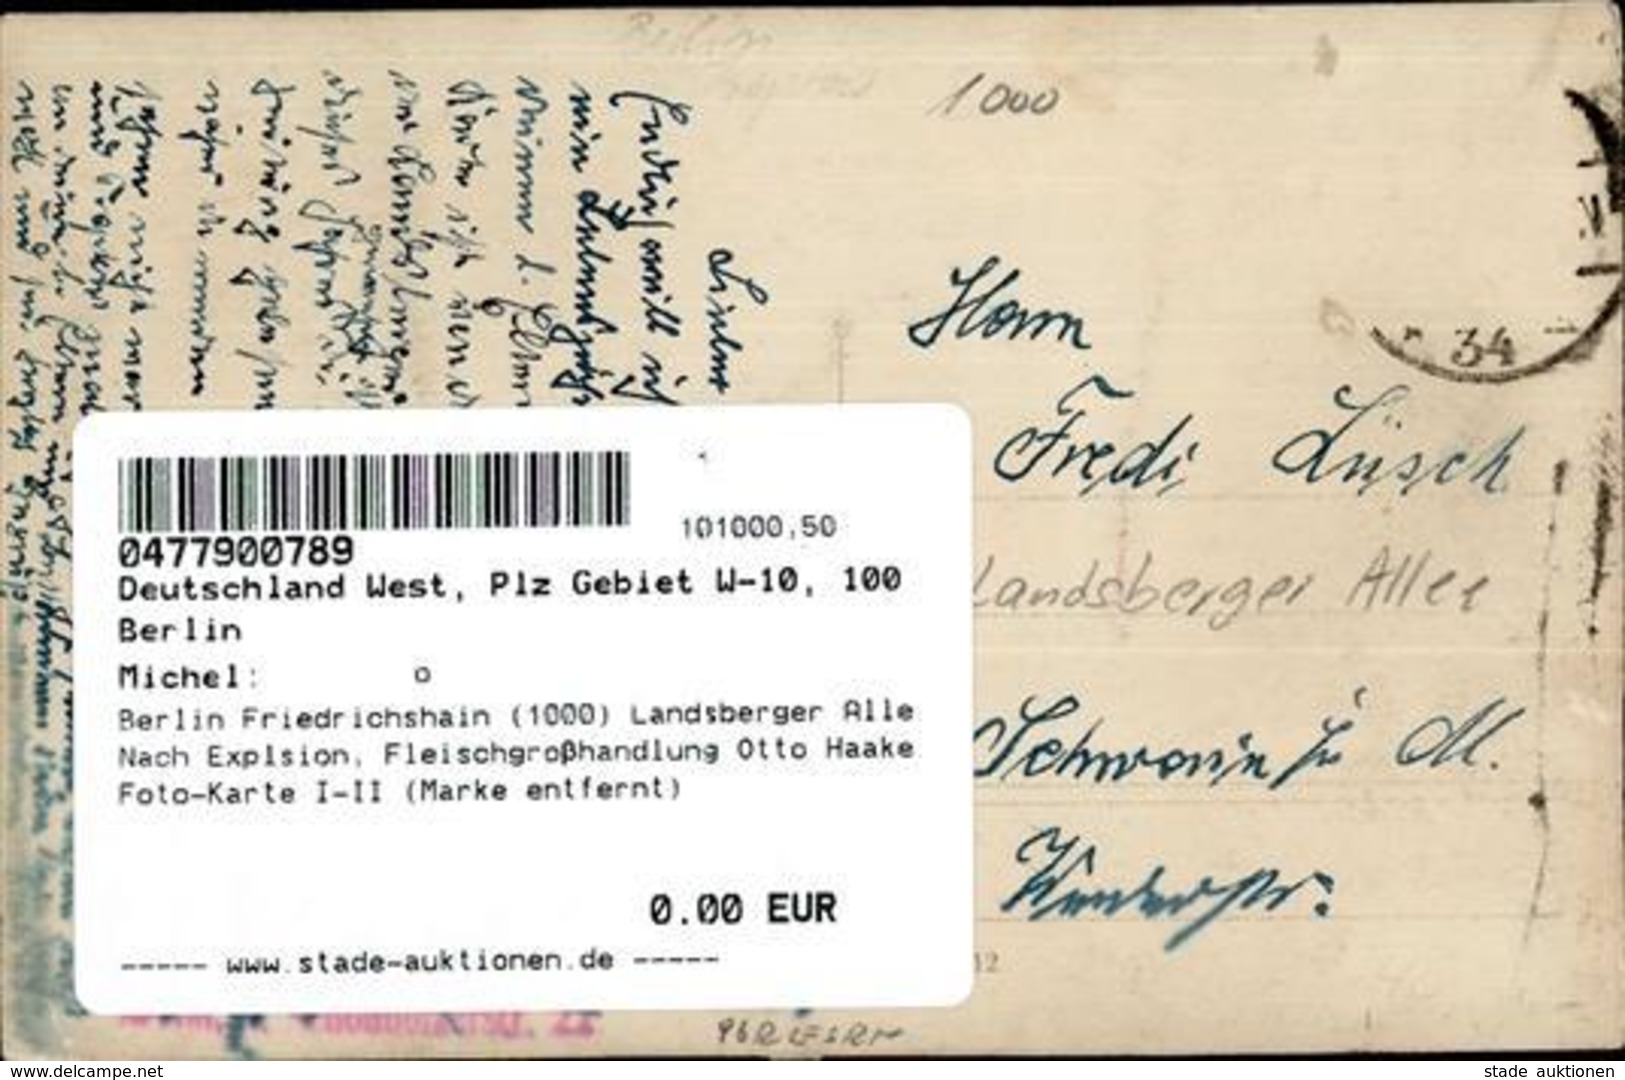 Berlin Friedrichshain (1000) Landsberger Alle Nach Explsion, Fleischgroßhandlung Otto Haake Foto-Karte I-II (Marke Entfe - Kamerun